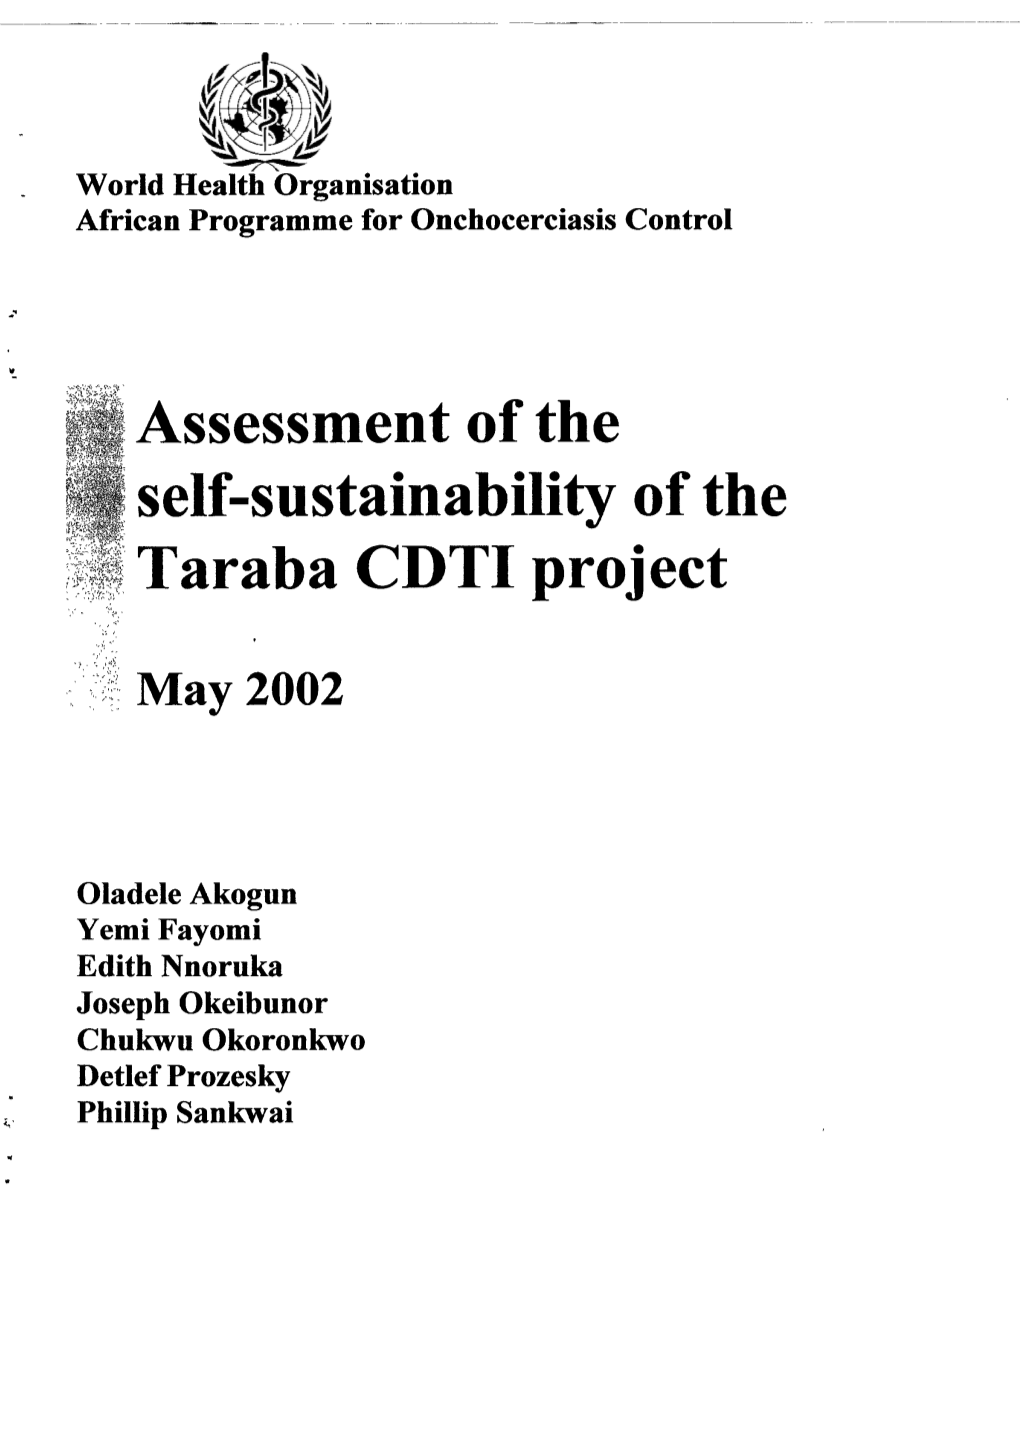 Taraba CDTI Project